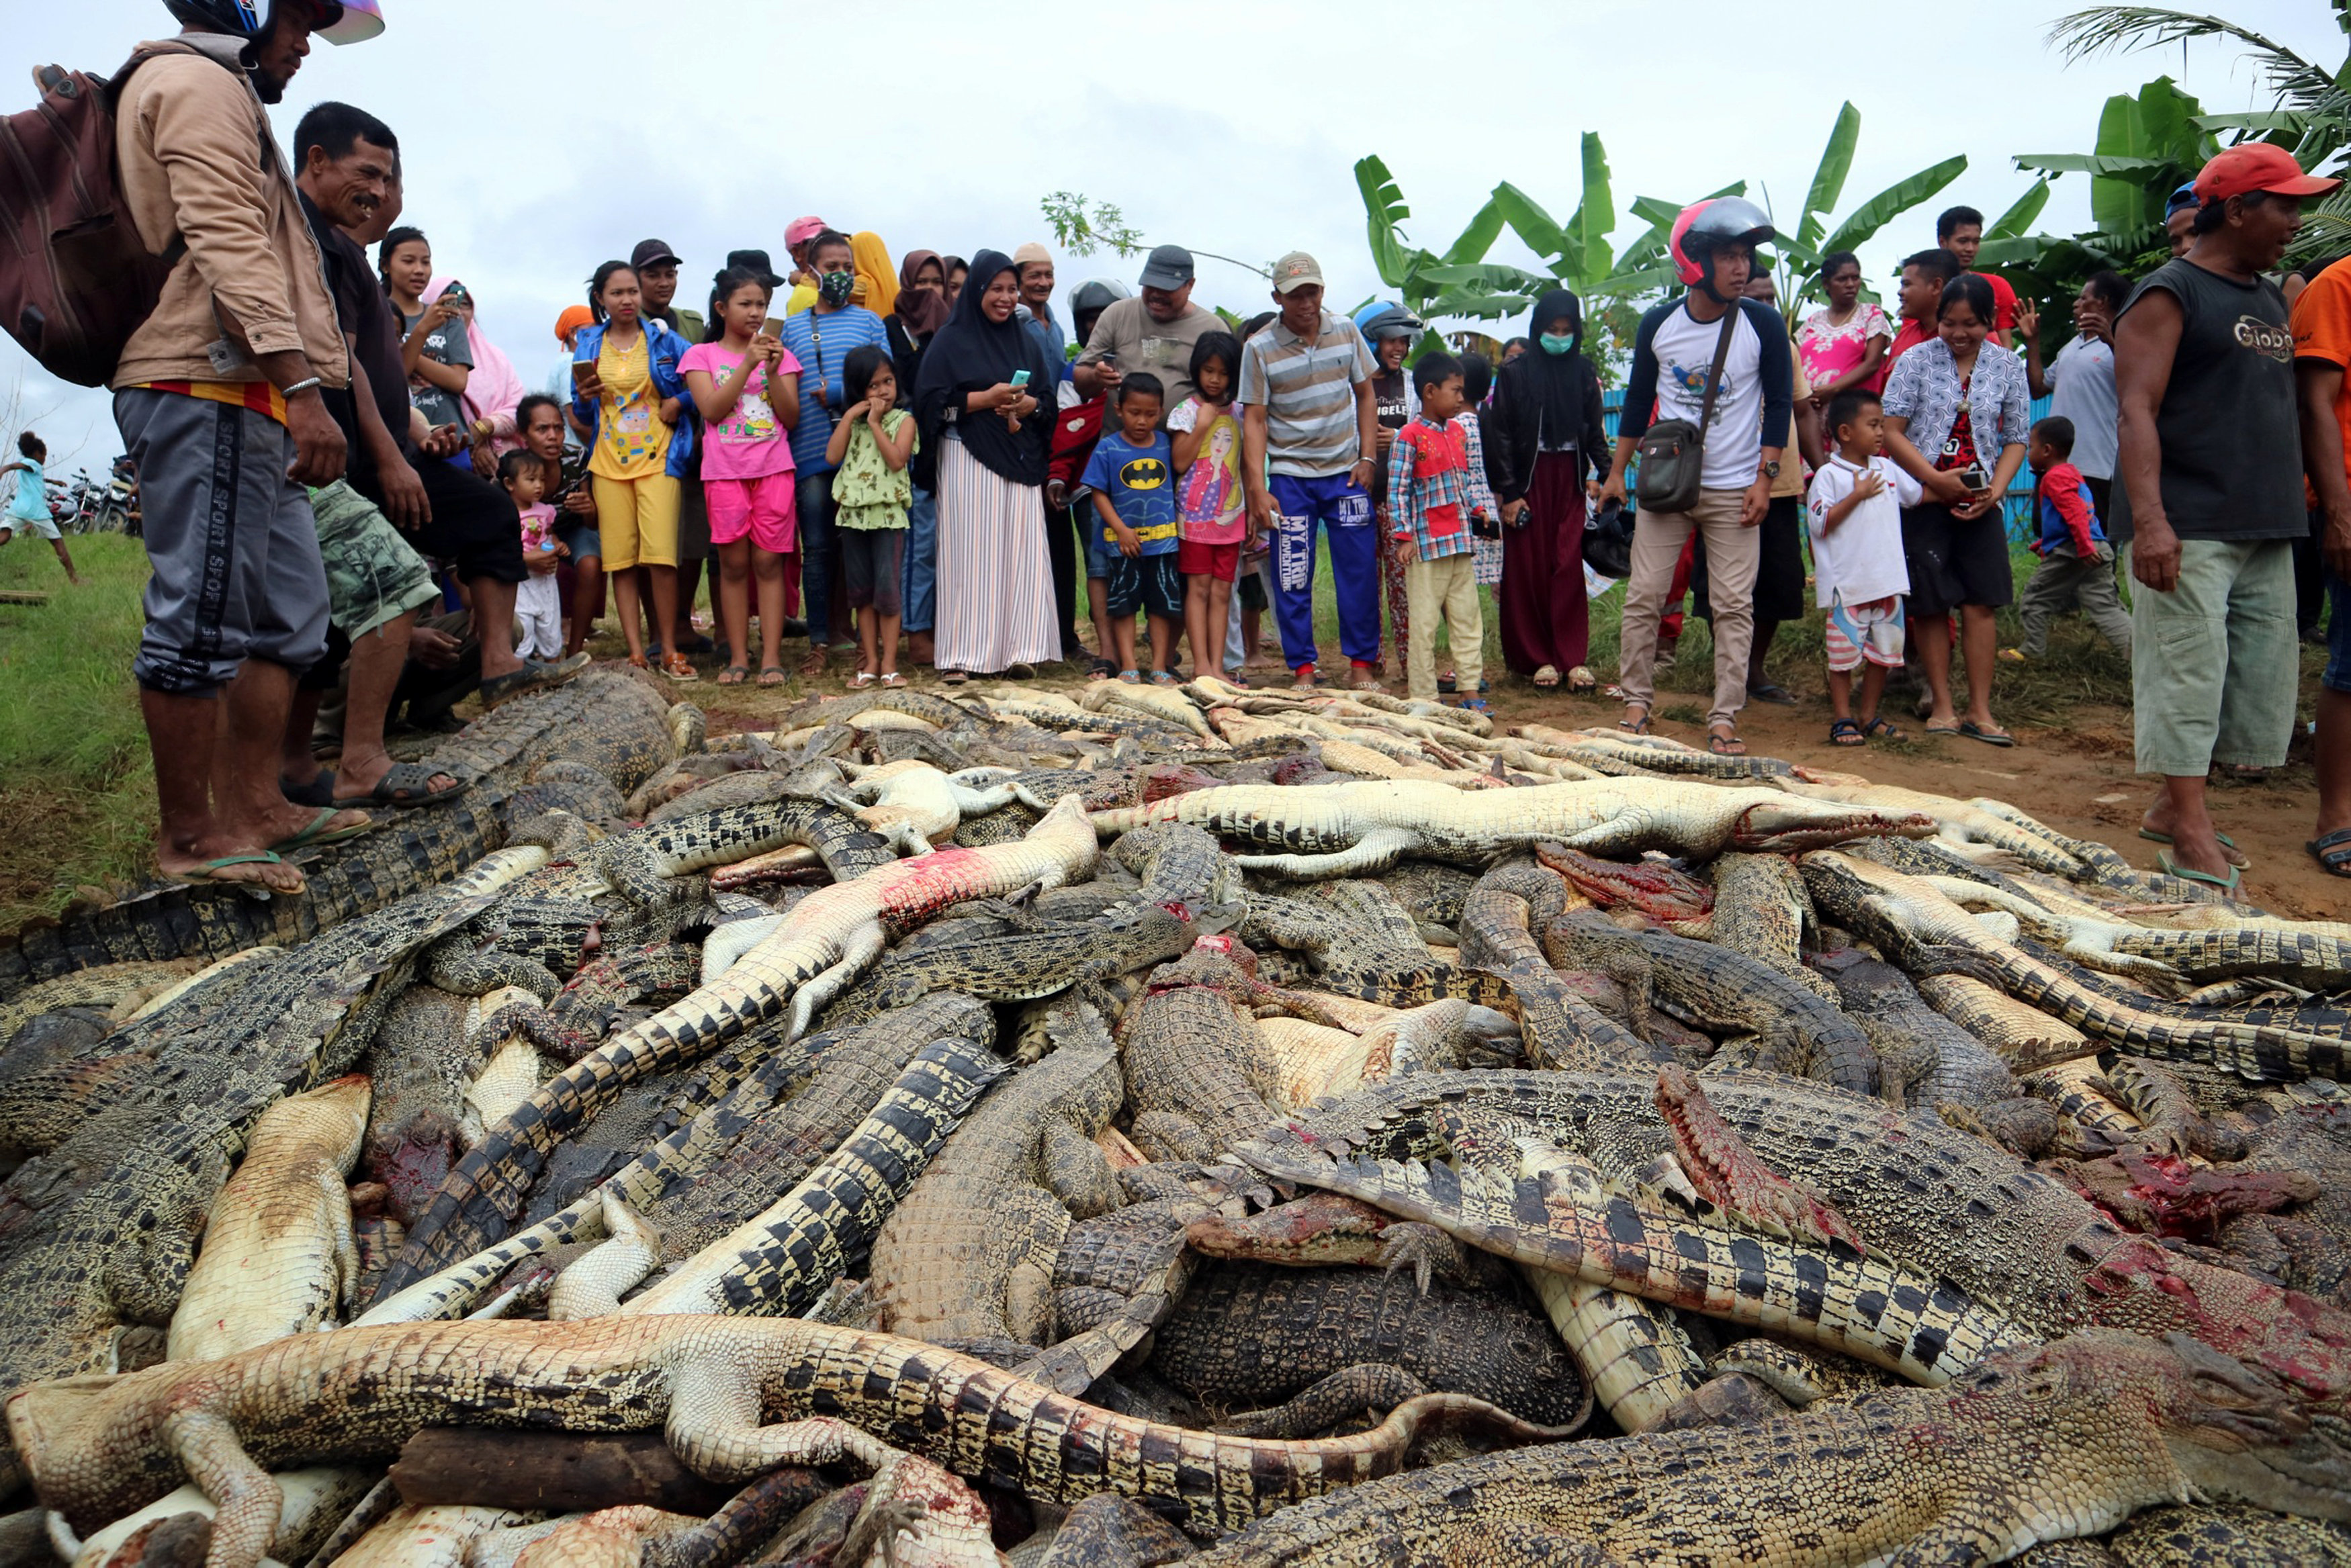 “Los cocodrilos son criaturas que también tienen que ser protegidas”, dijo un funcionario ambiental de ese país.